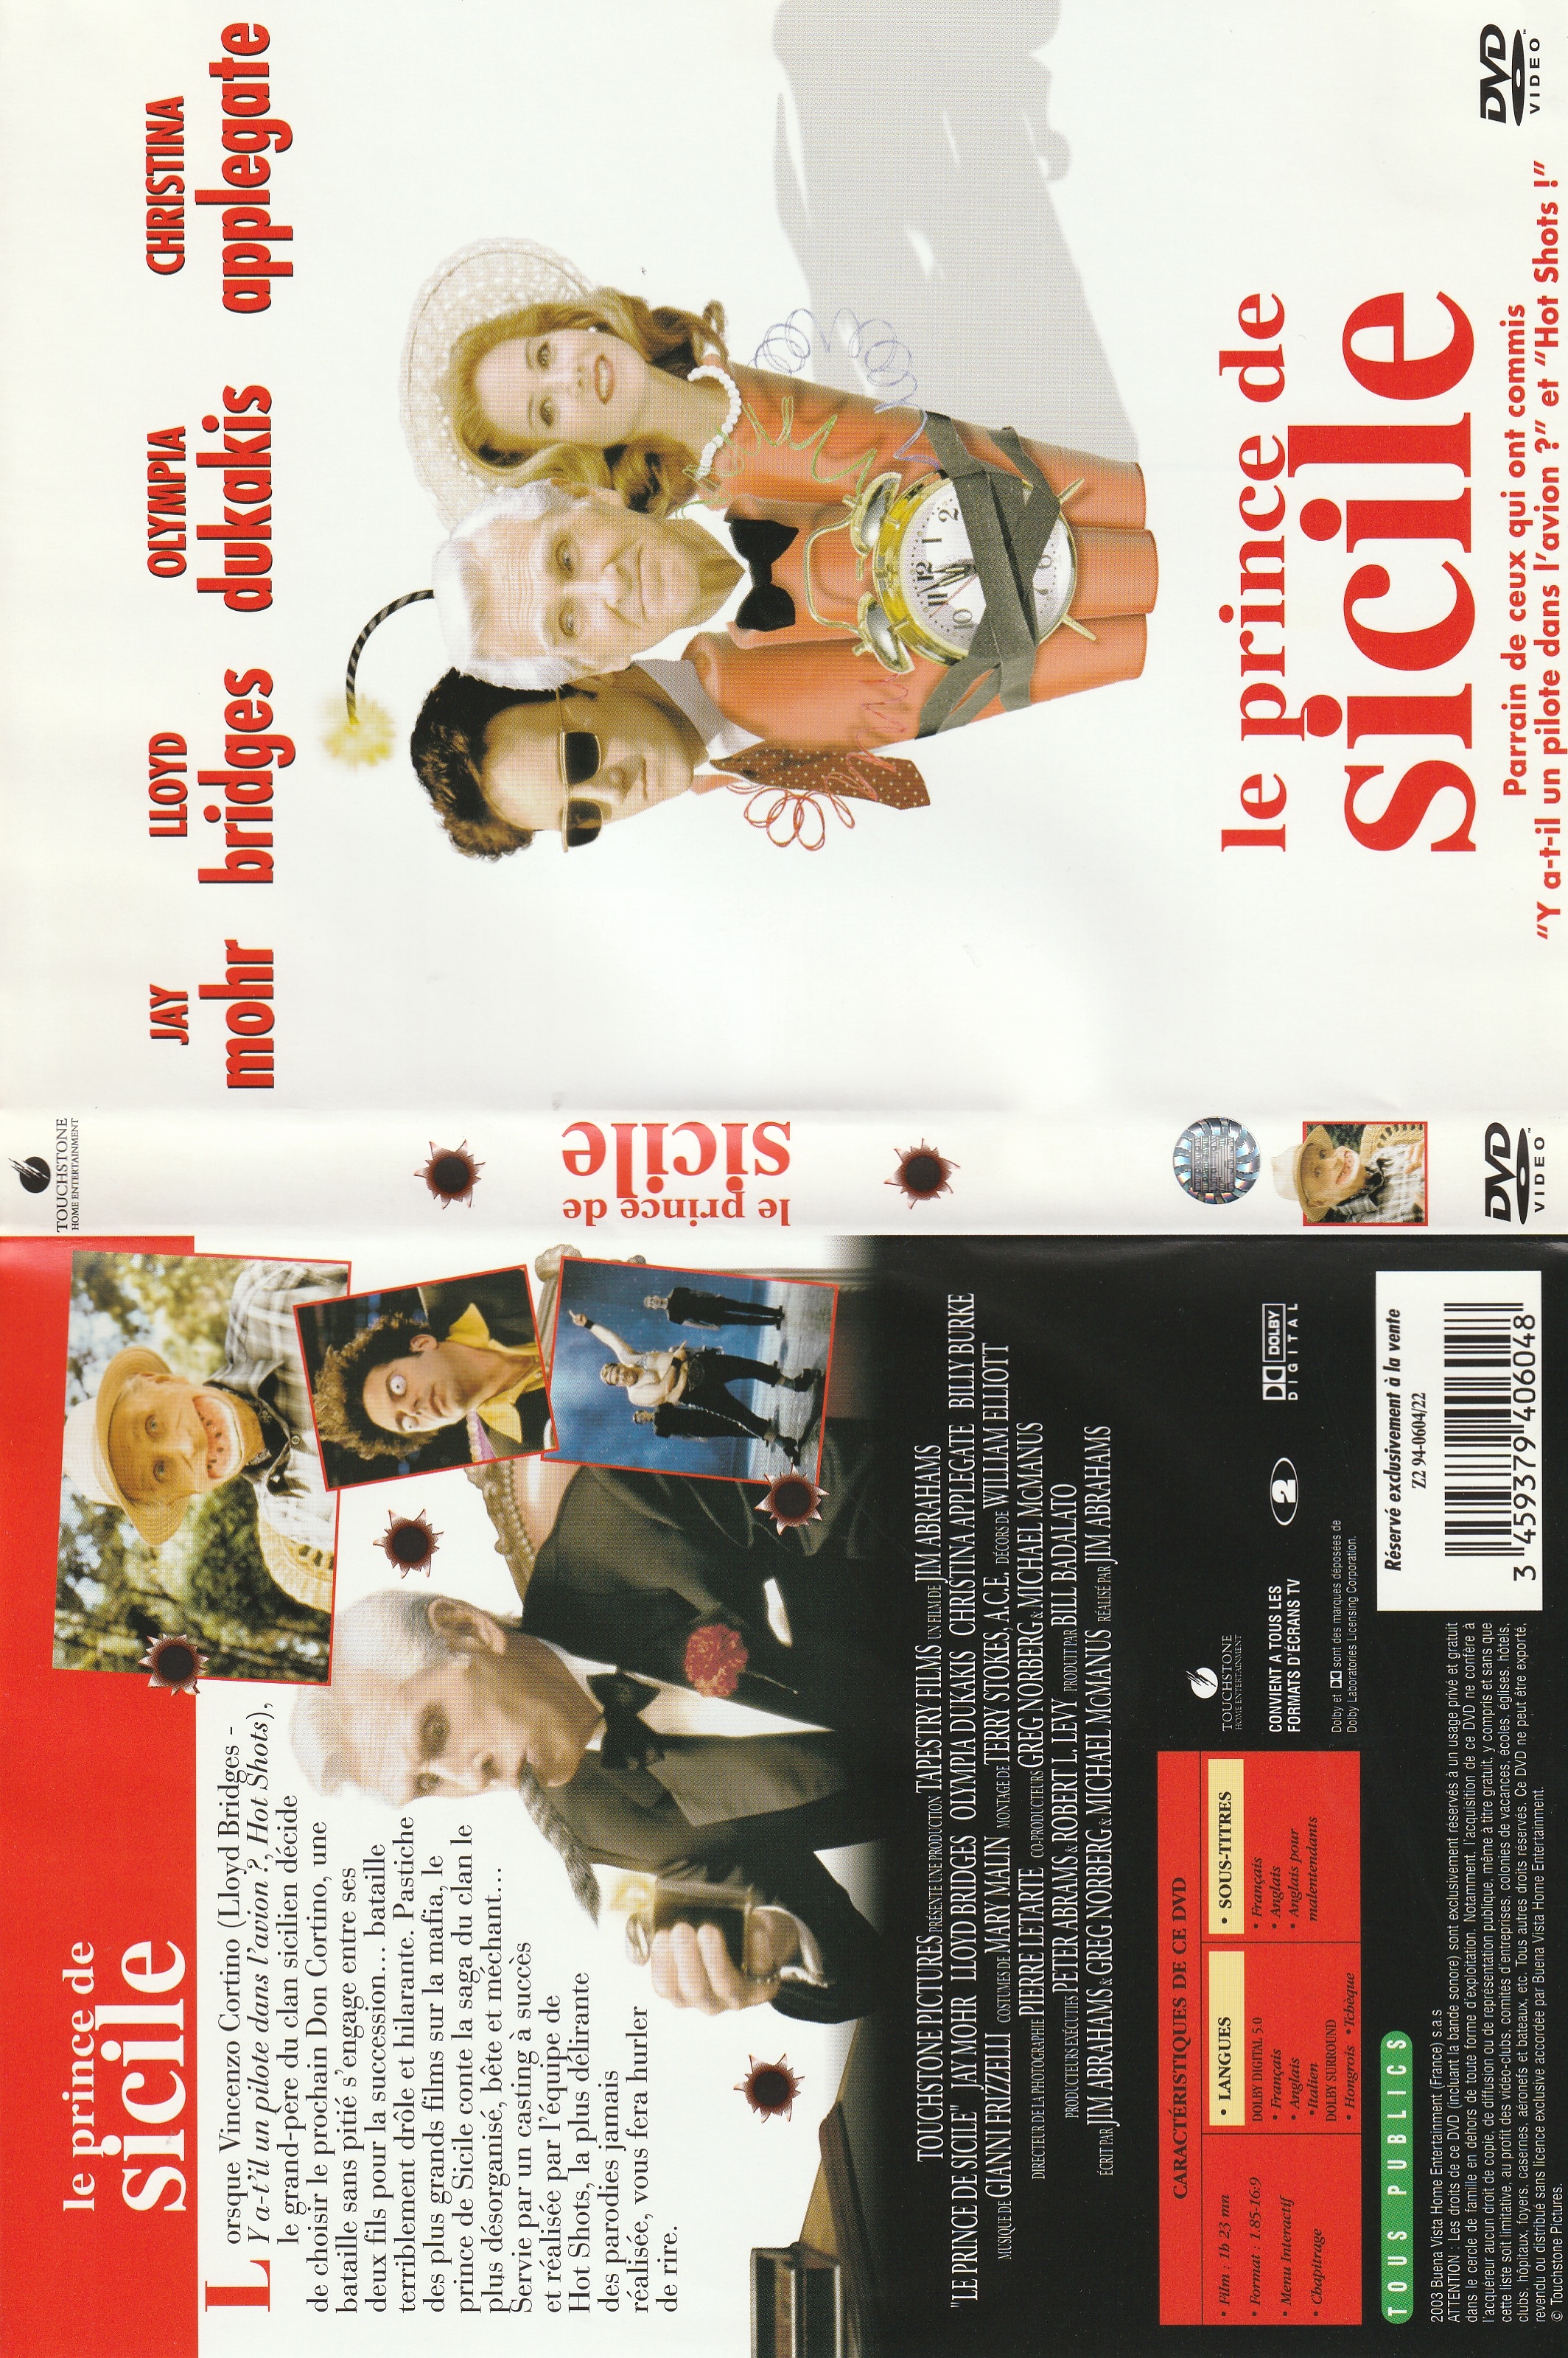 Jaquette DVD Le prince de sicile